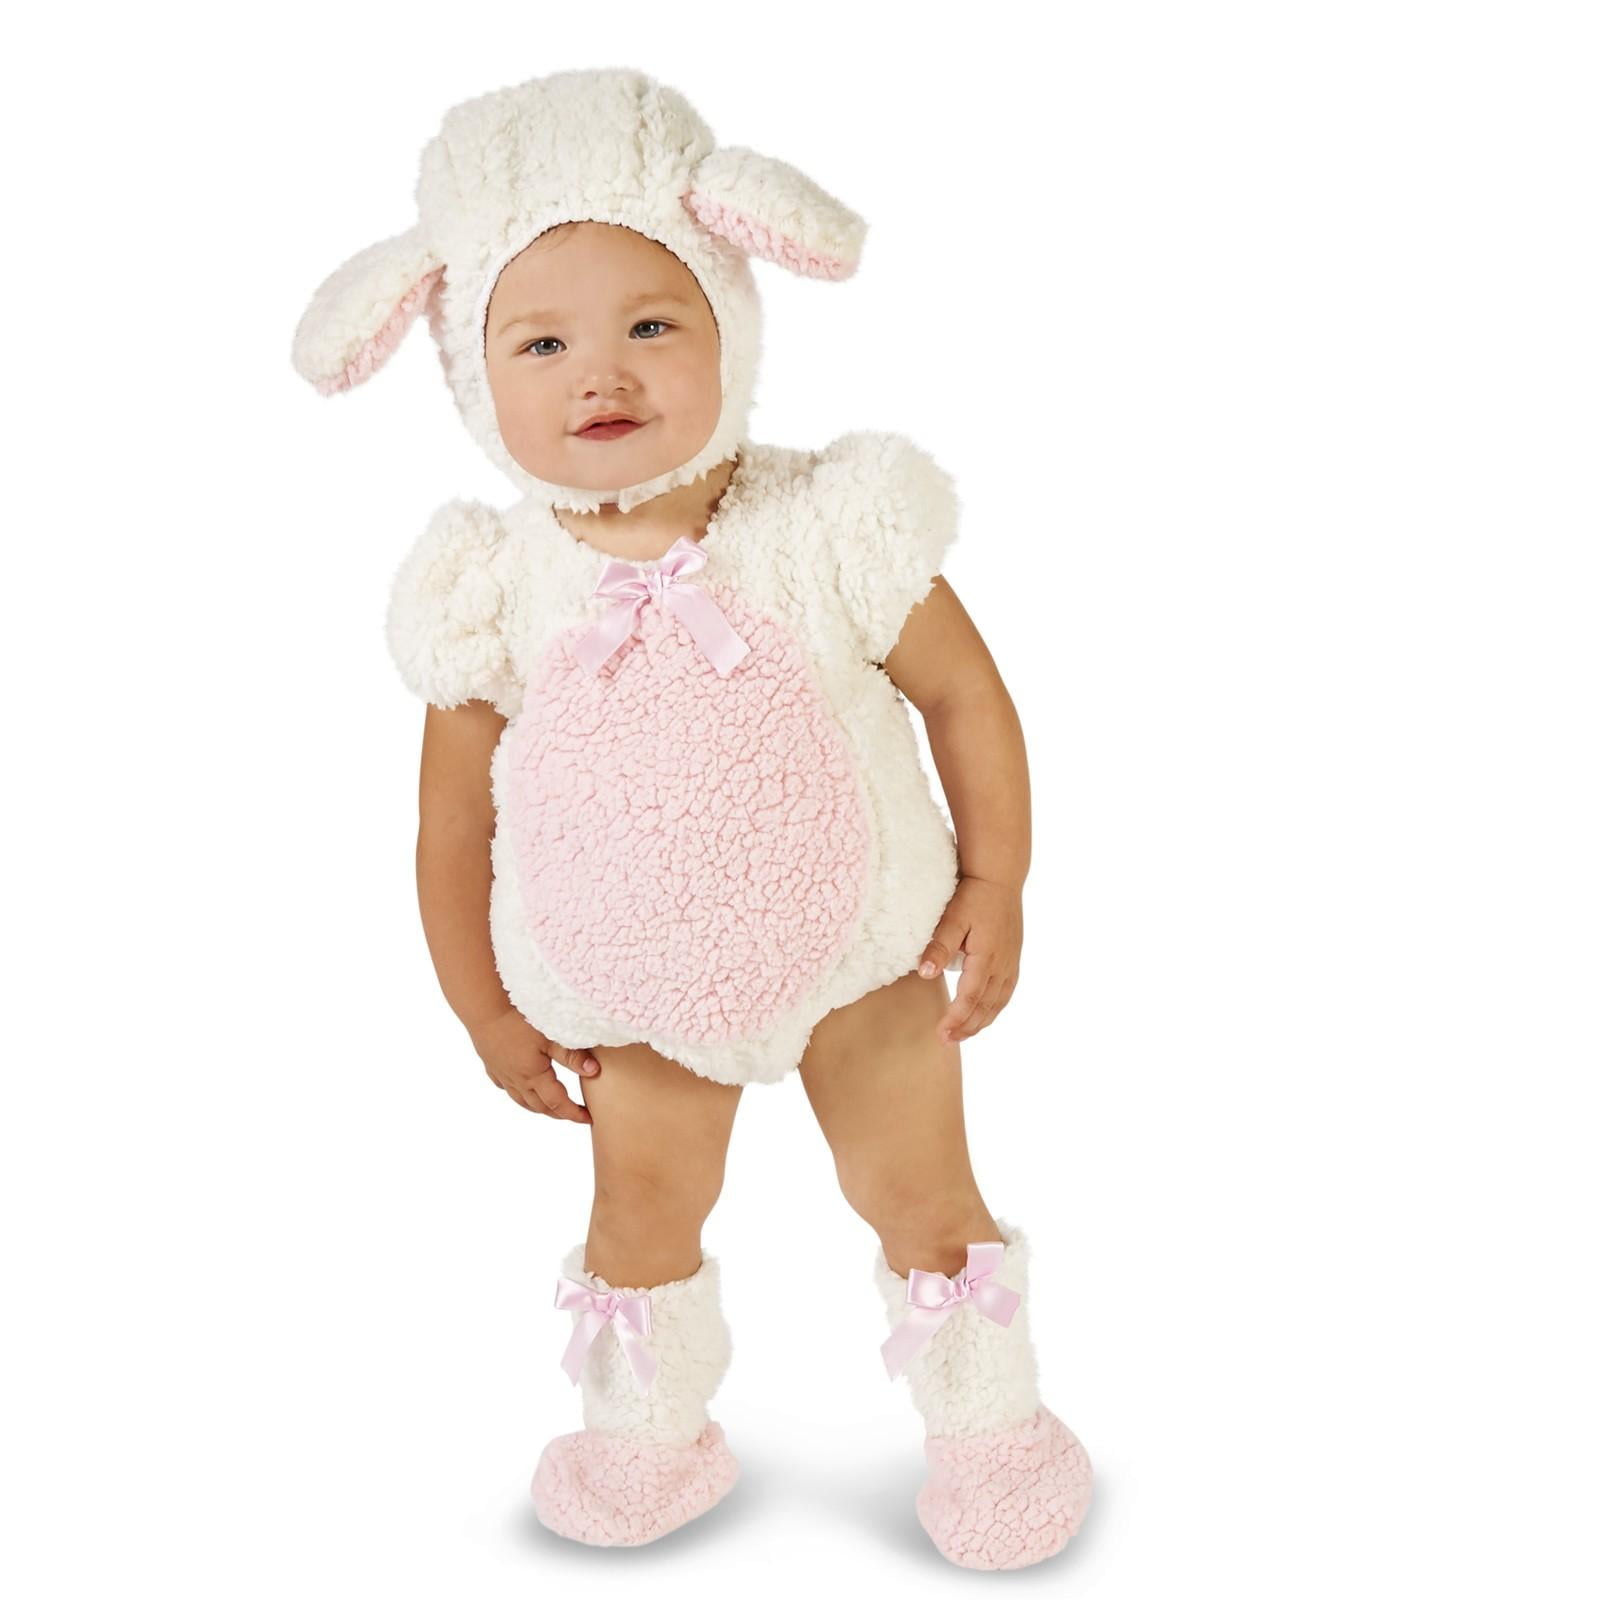 Pink and White Lamb Infant Costume 12 18M 18eae72c 4d38 45ff ad70 88cf5519d47a 1.d91dea6c94adba1c0947634dec94cd48